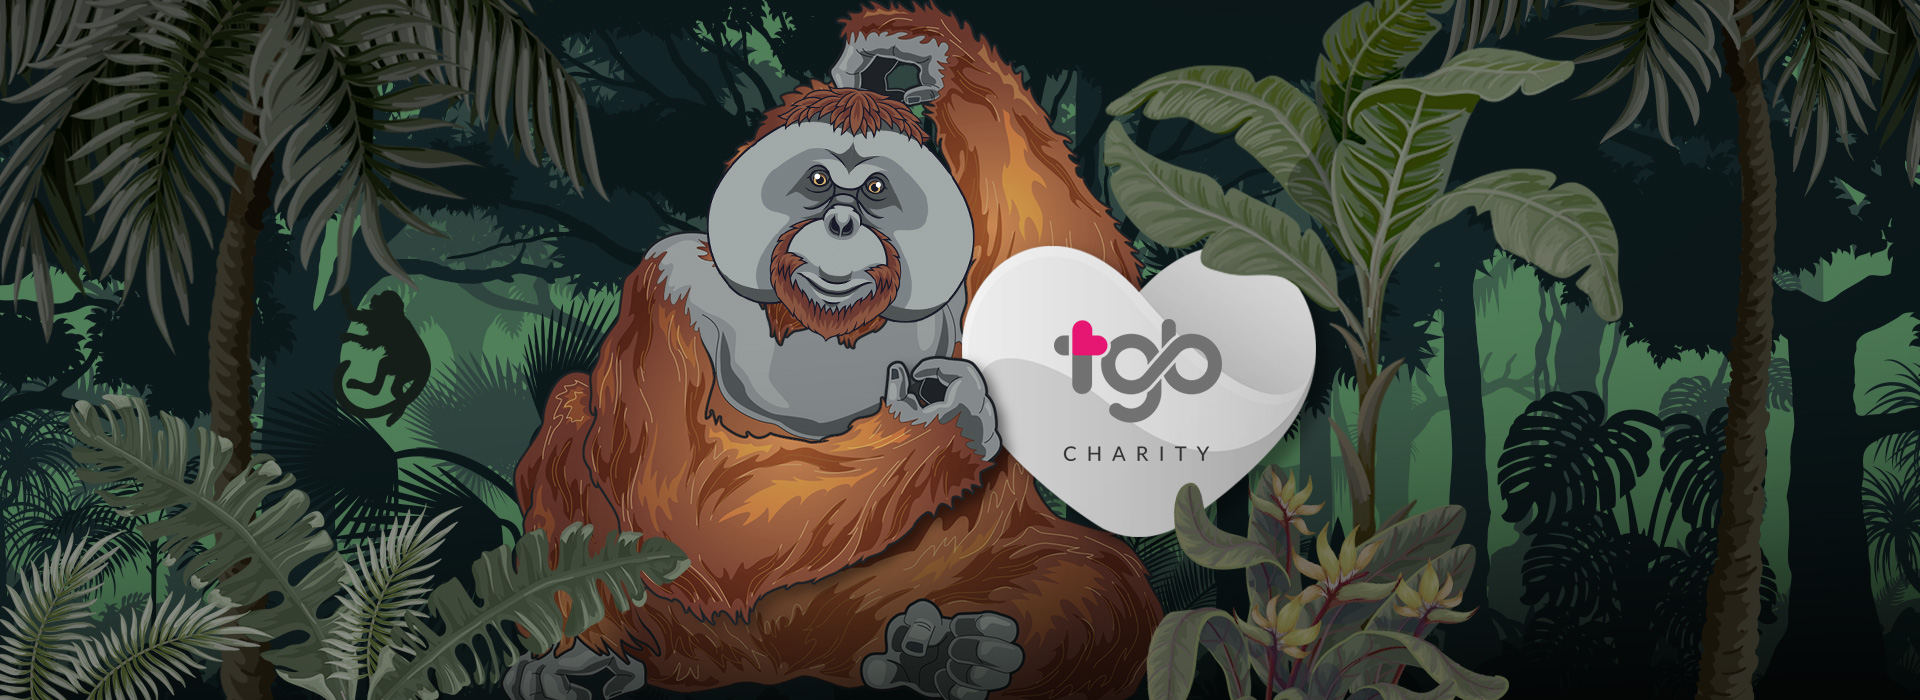 与可爱的森林园丁一起庆祝世界雨林日 - TGB Charity